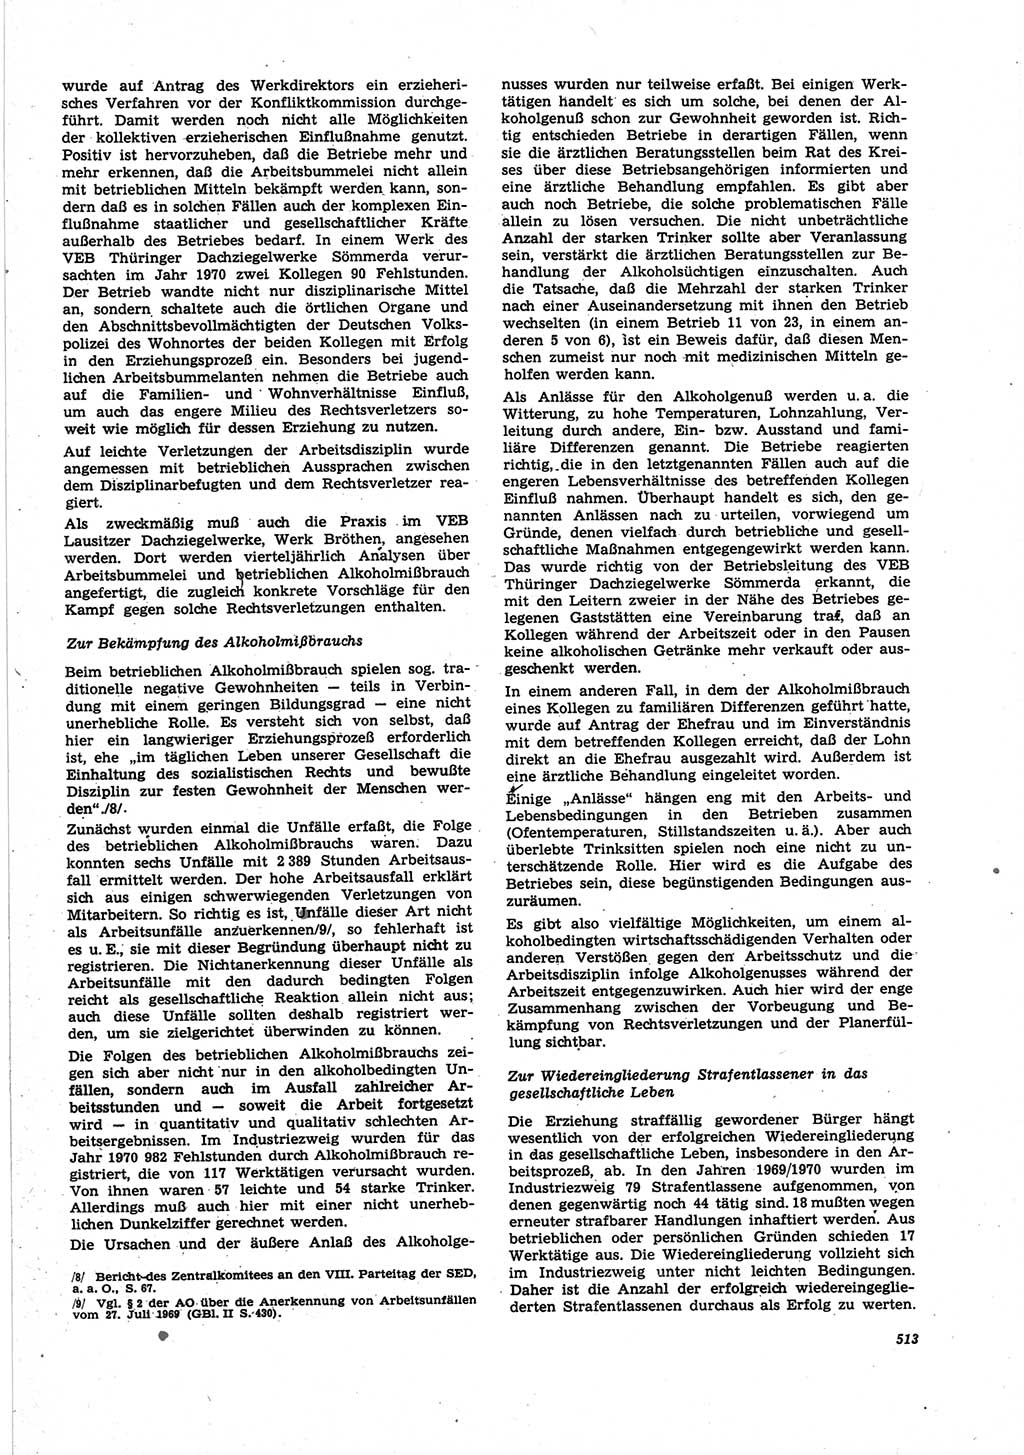 Neue Justiz (NJ), Zeitschrift für Recht und Rechtswissenschaft [Deutsche Demokratische Republik (DDR)], 25. Jahrgang 1971, Seite 513 (NJ DDR 1971, S. 513)